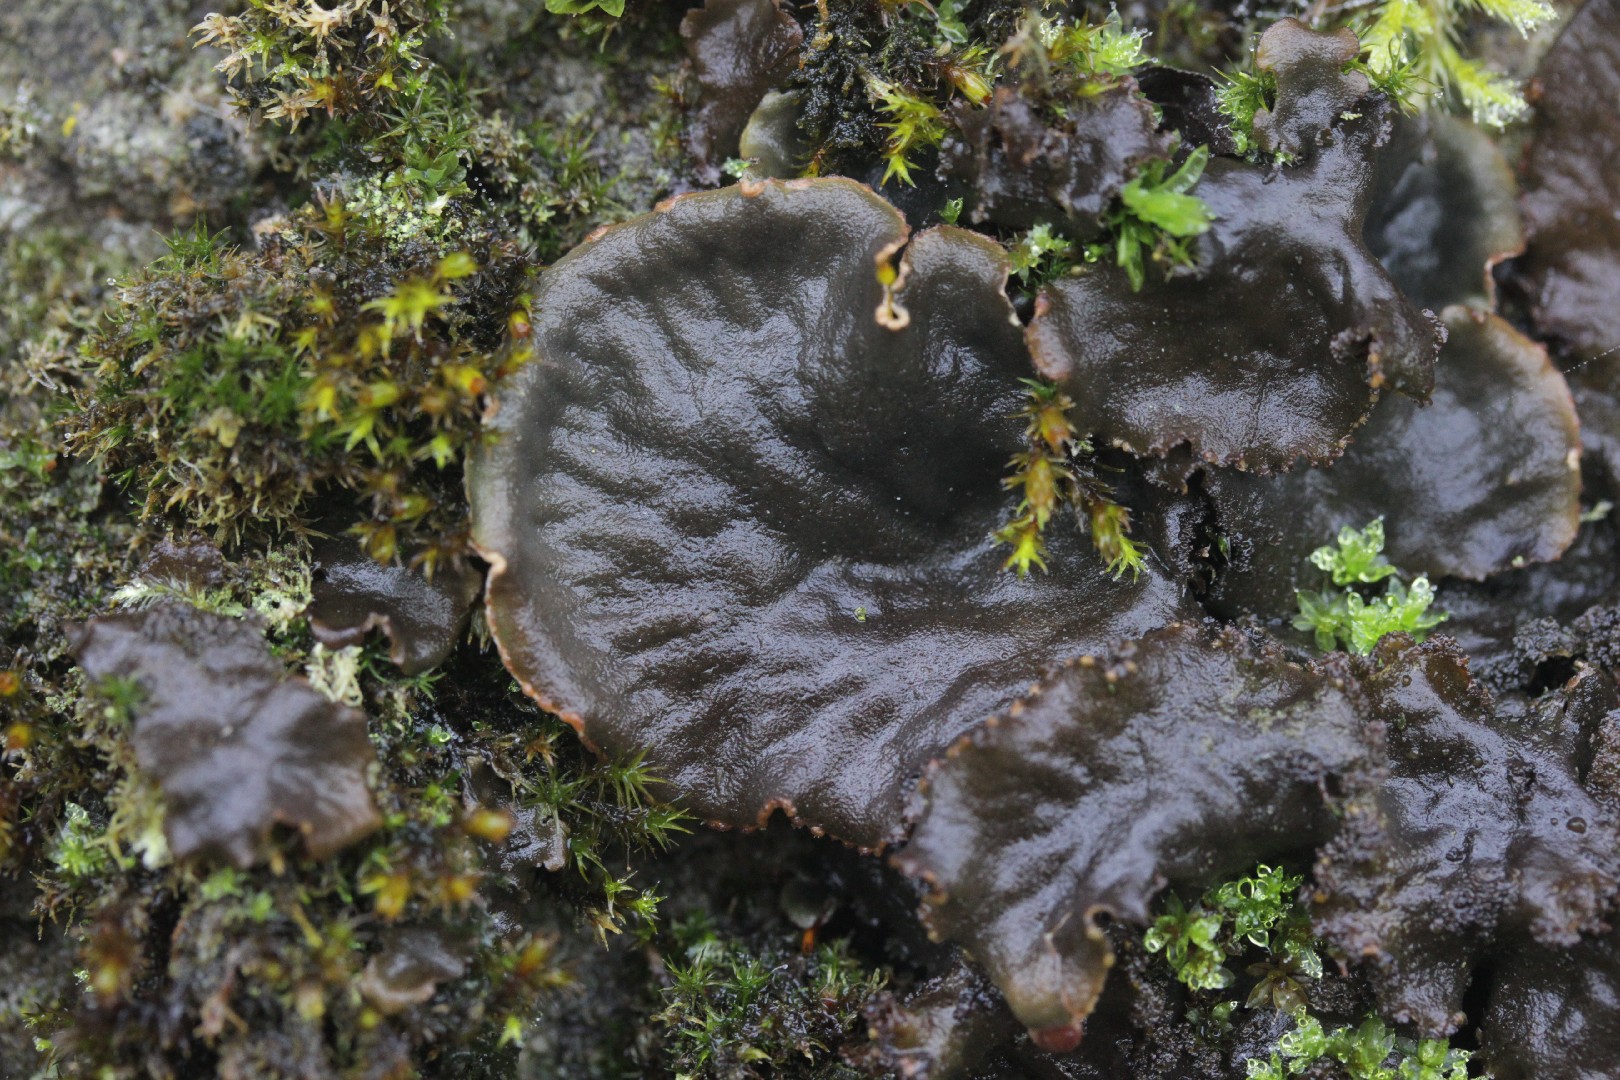 Scaly dog pelt lichen